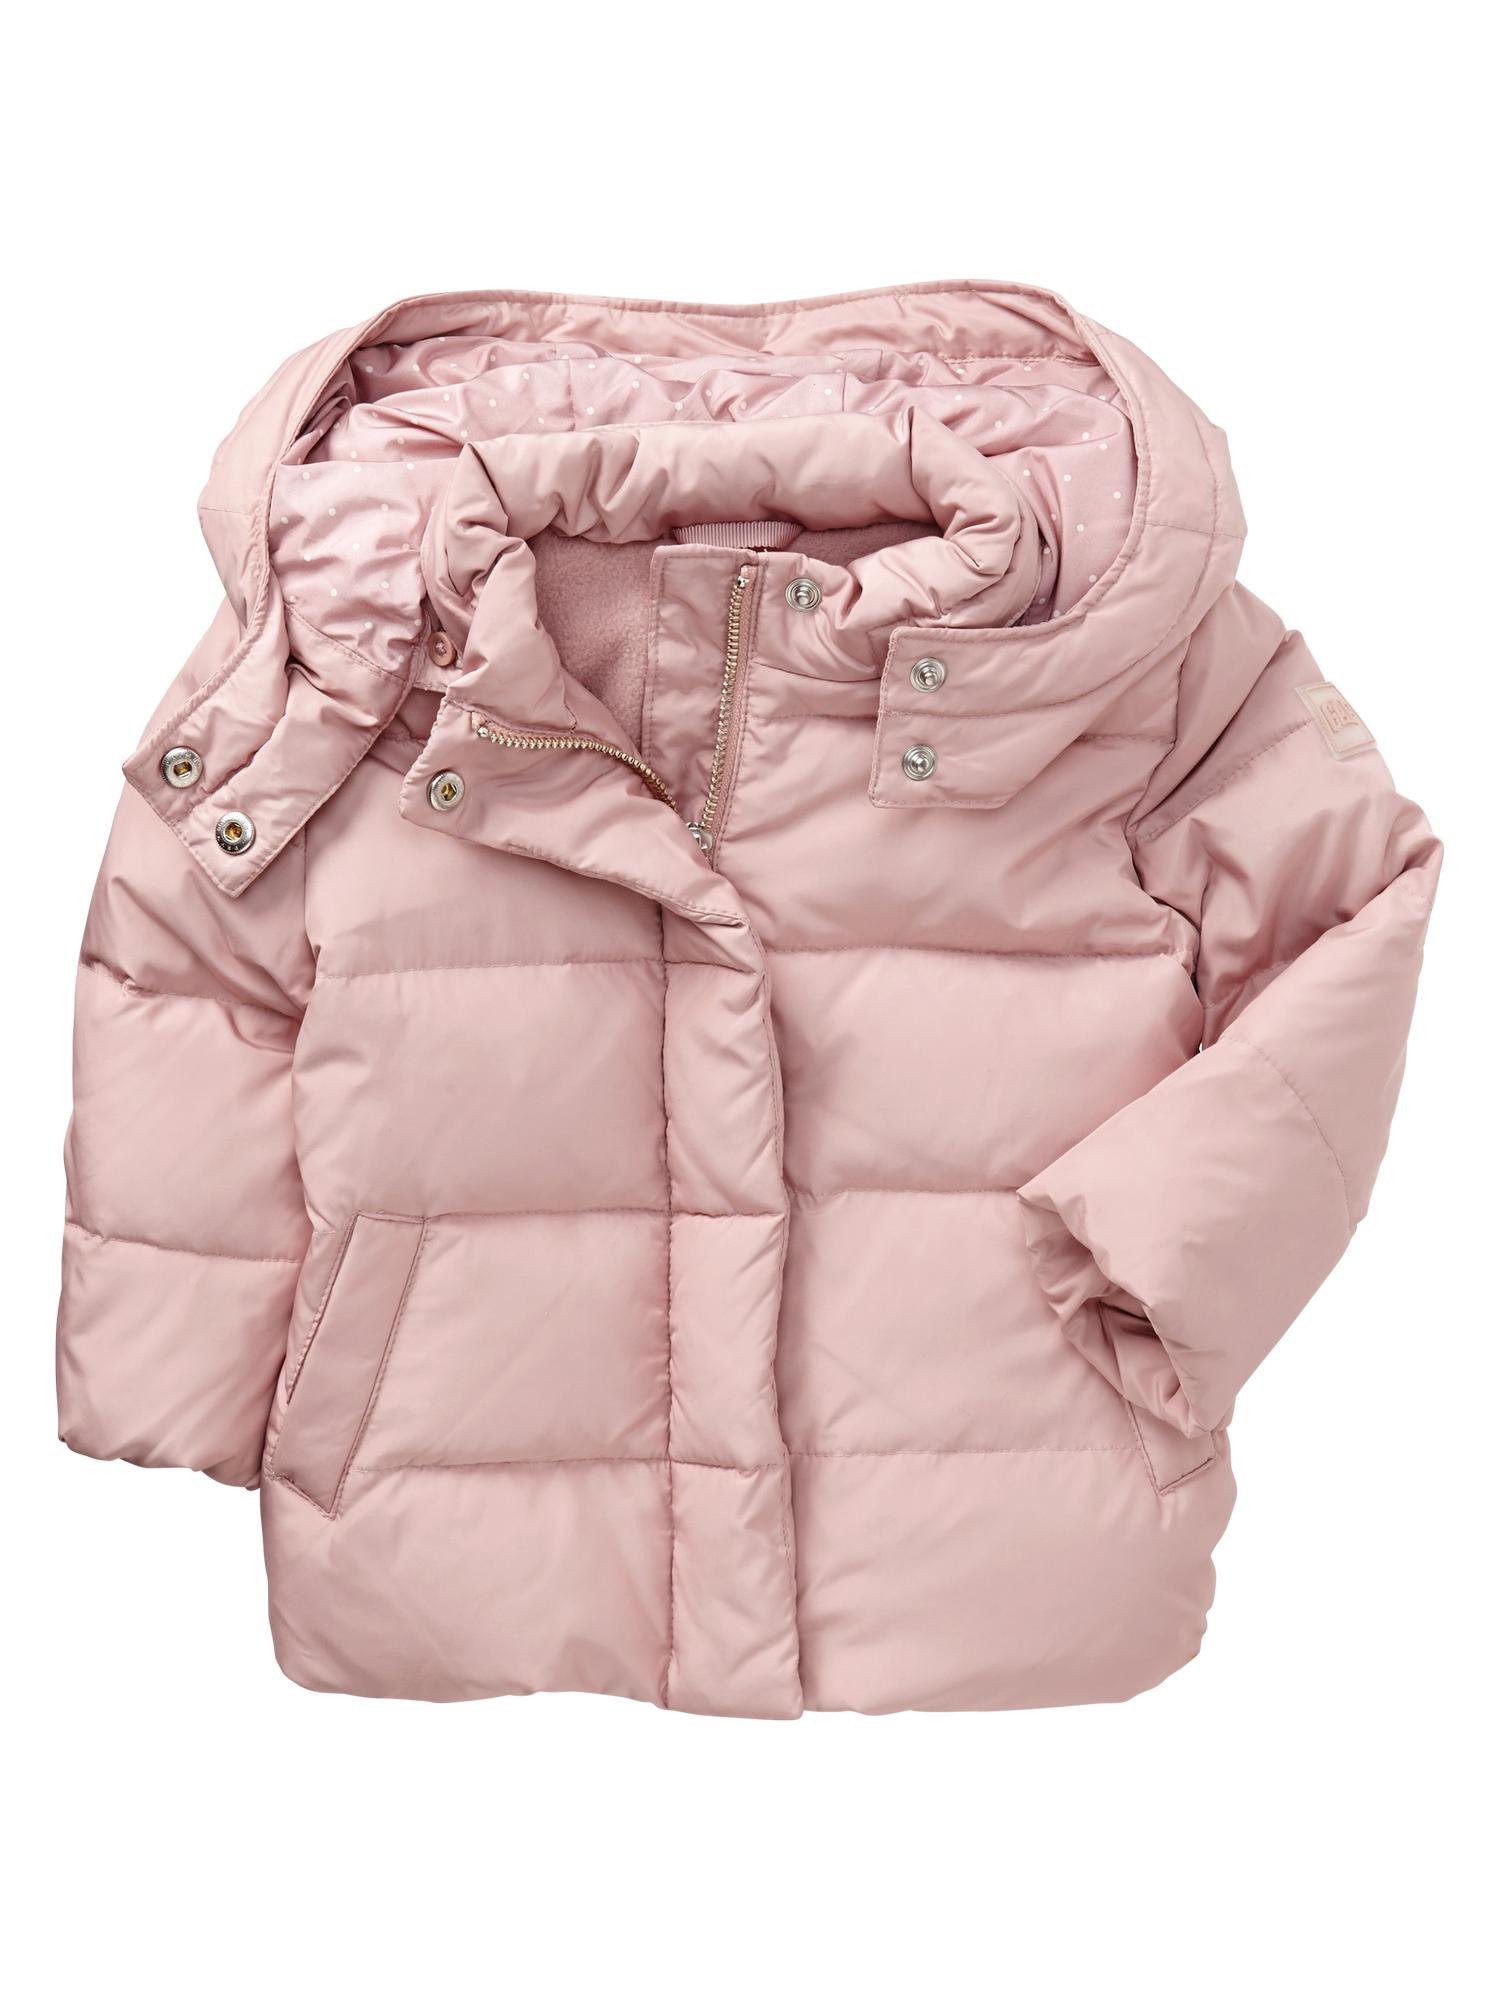 Warmest down puffer jacket | Gap